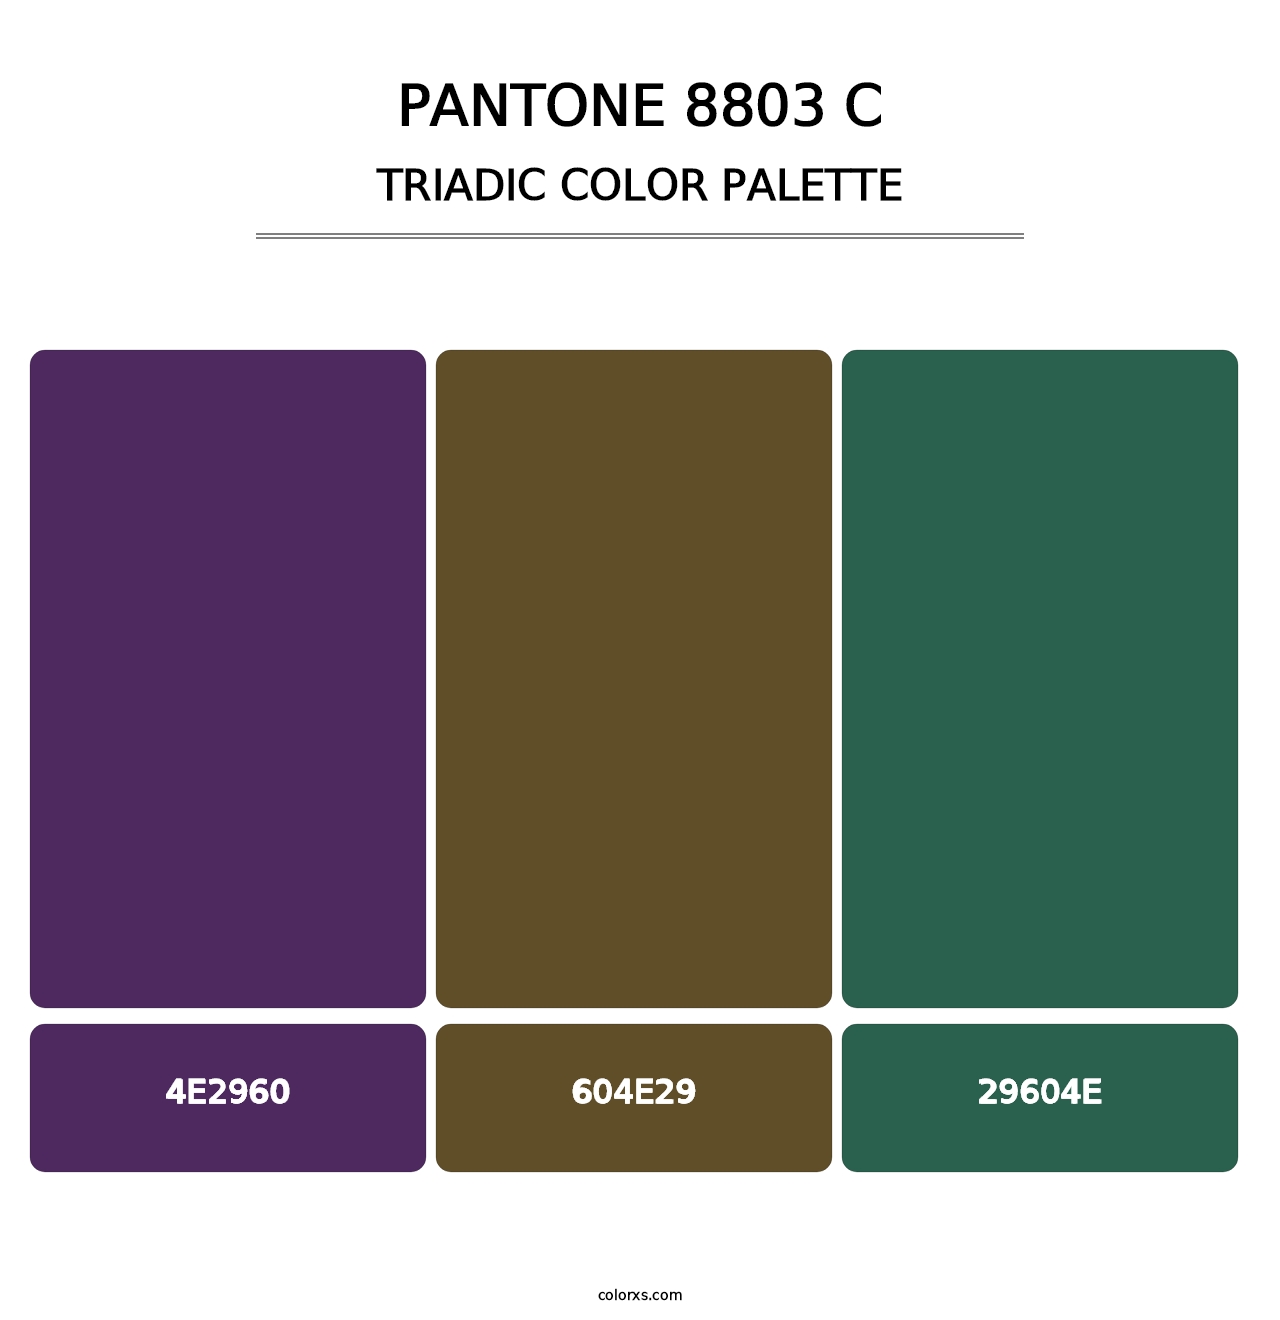 PANTONE 8803 C - Triadic Color Palette